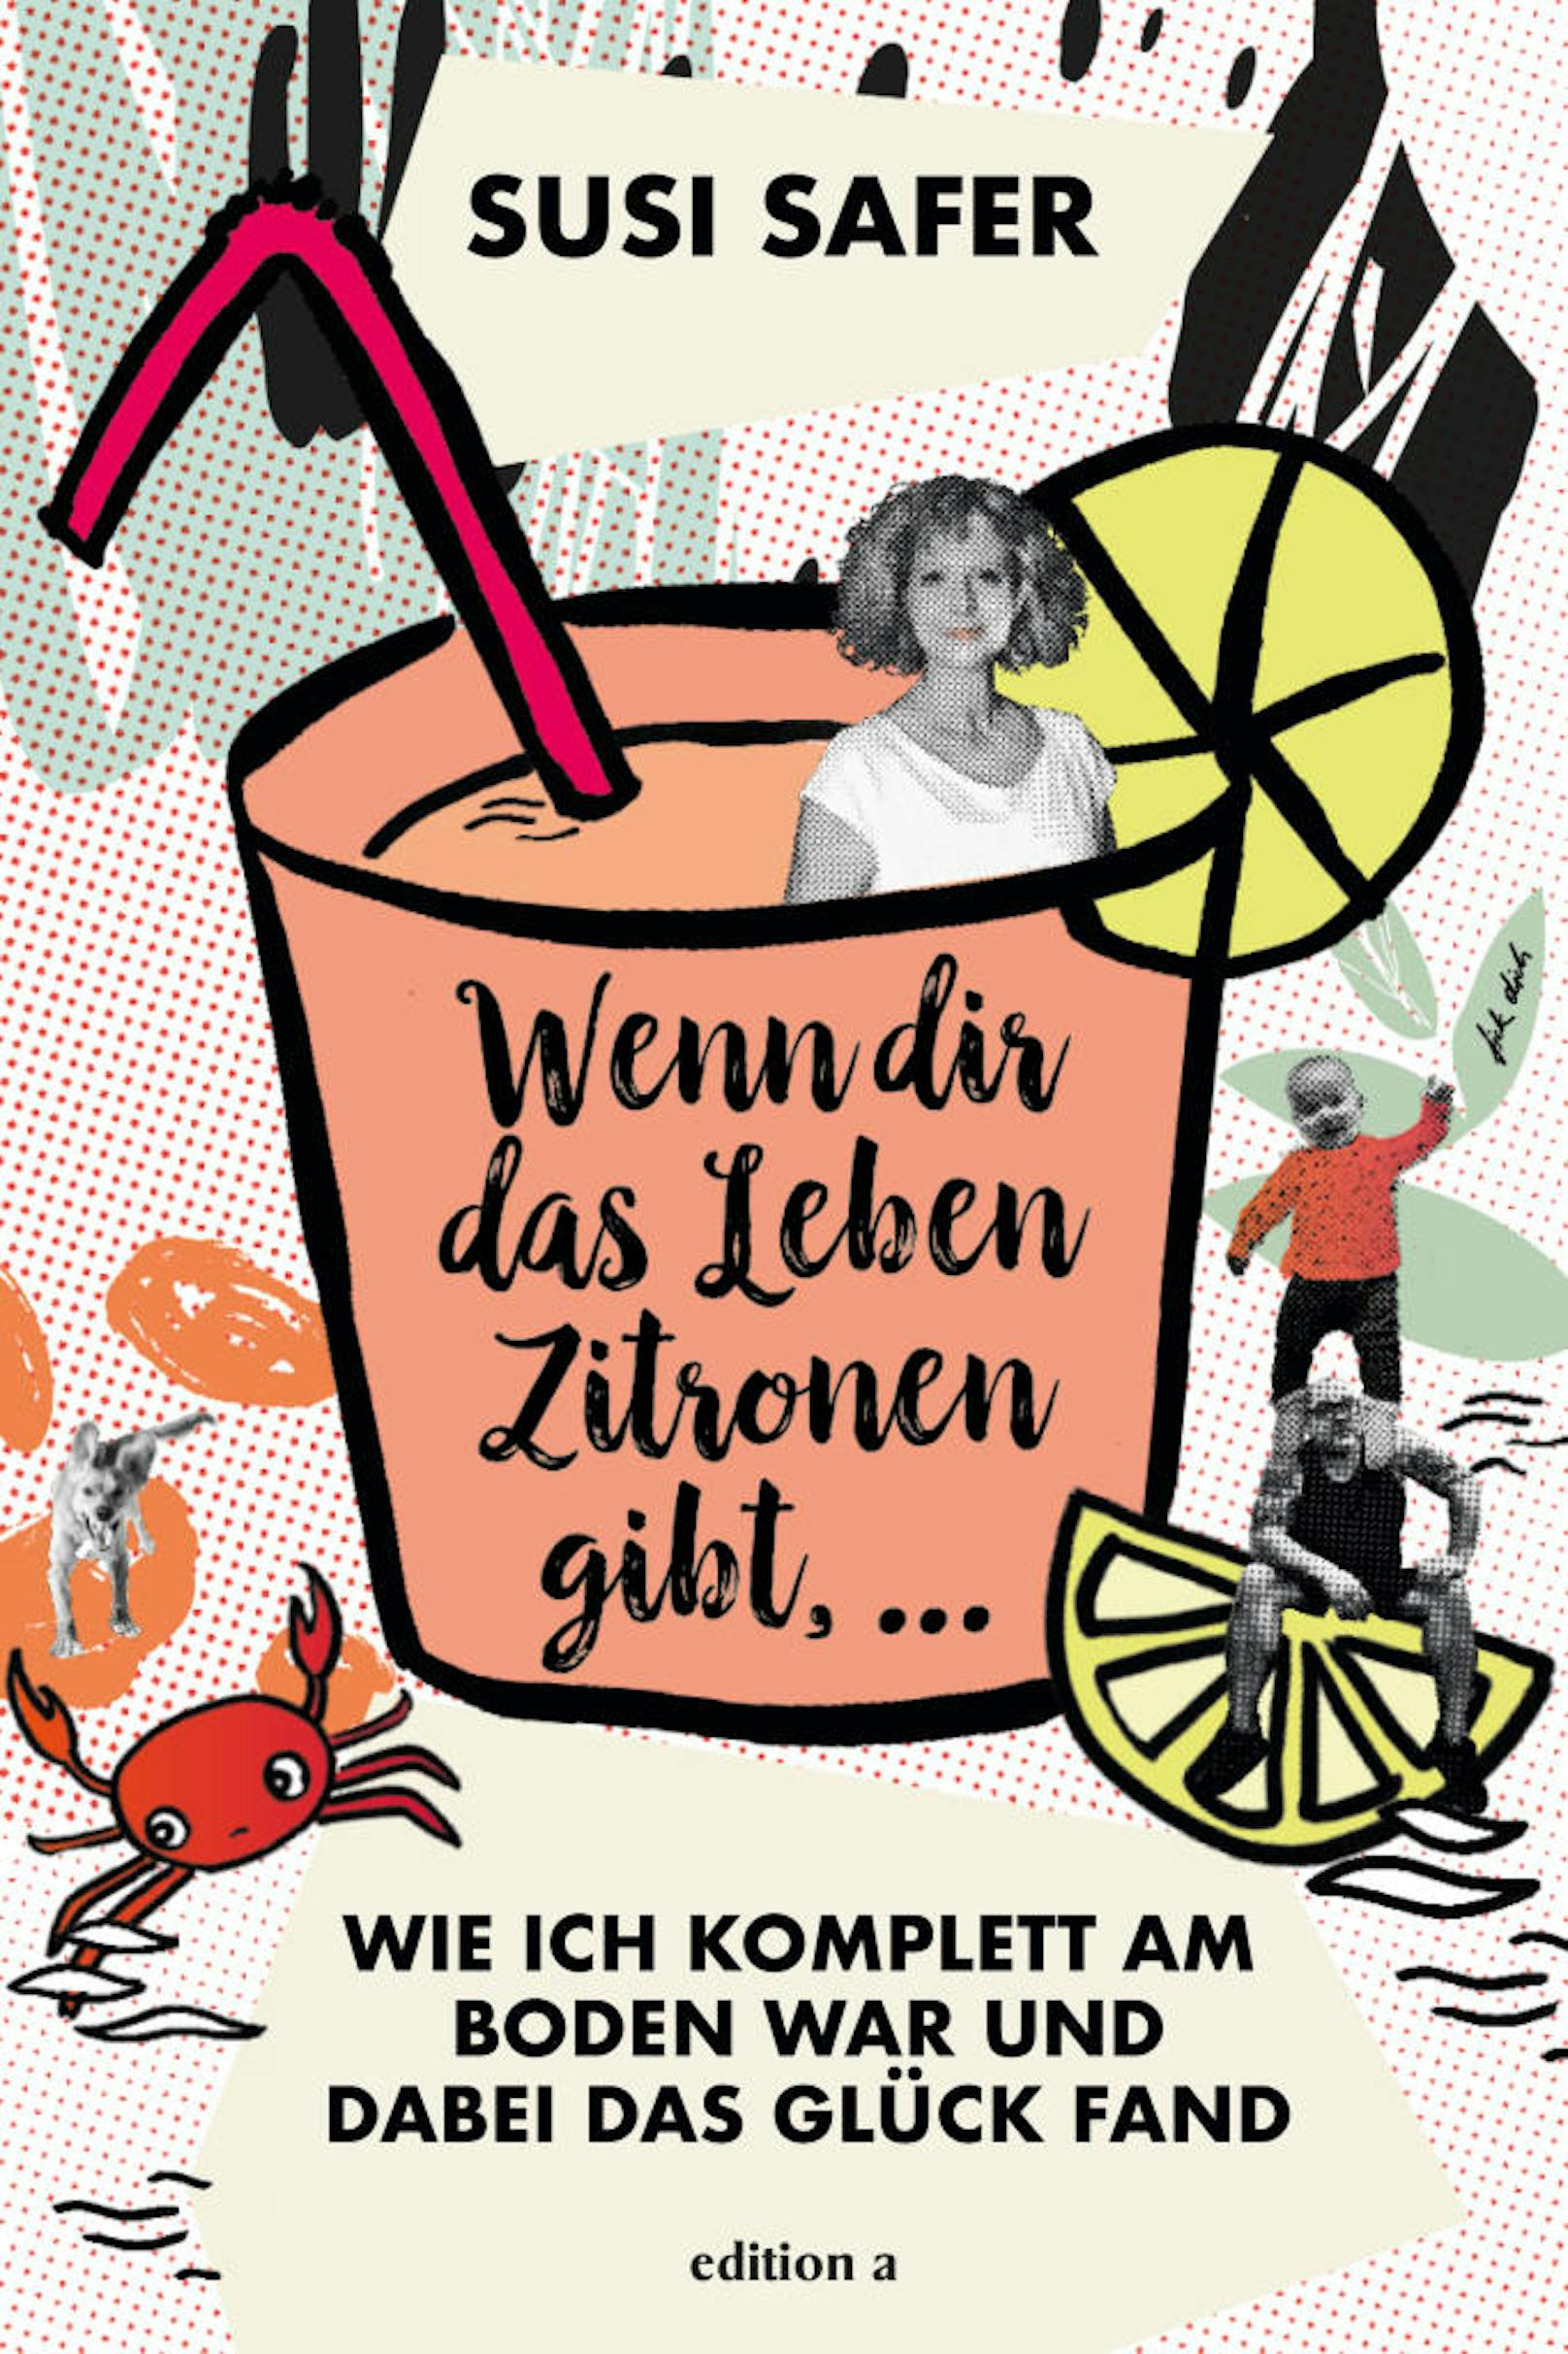 Am 14. Februar wird Susi Safers Buch "Wenn dir das Leben Zitronen gibt..." bei Thalia in Wien-Mitte präsentiert.